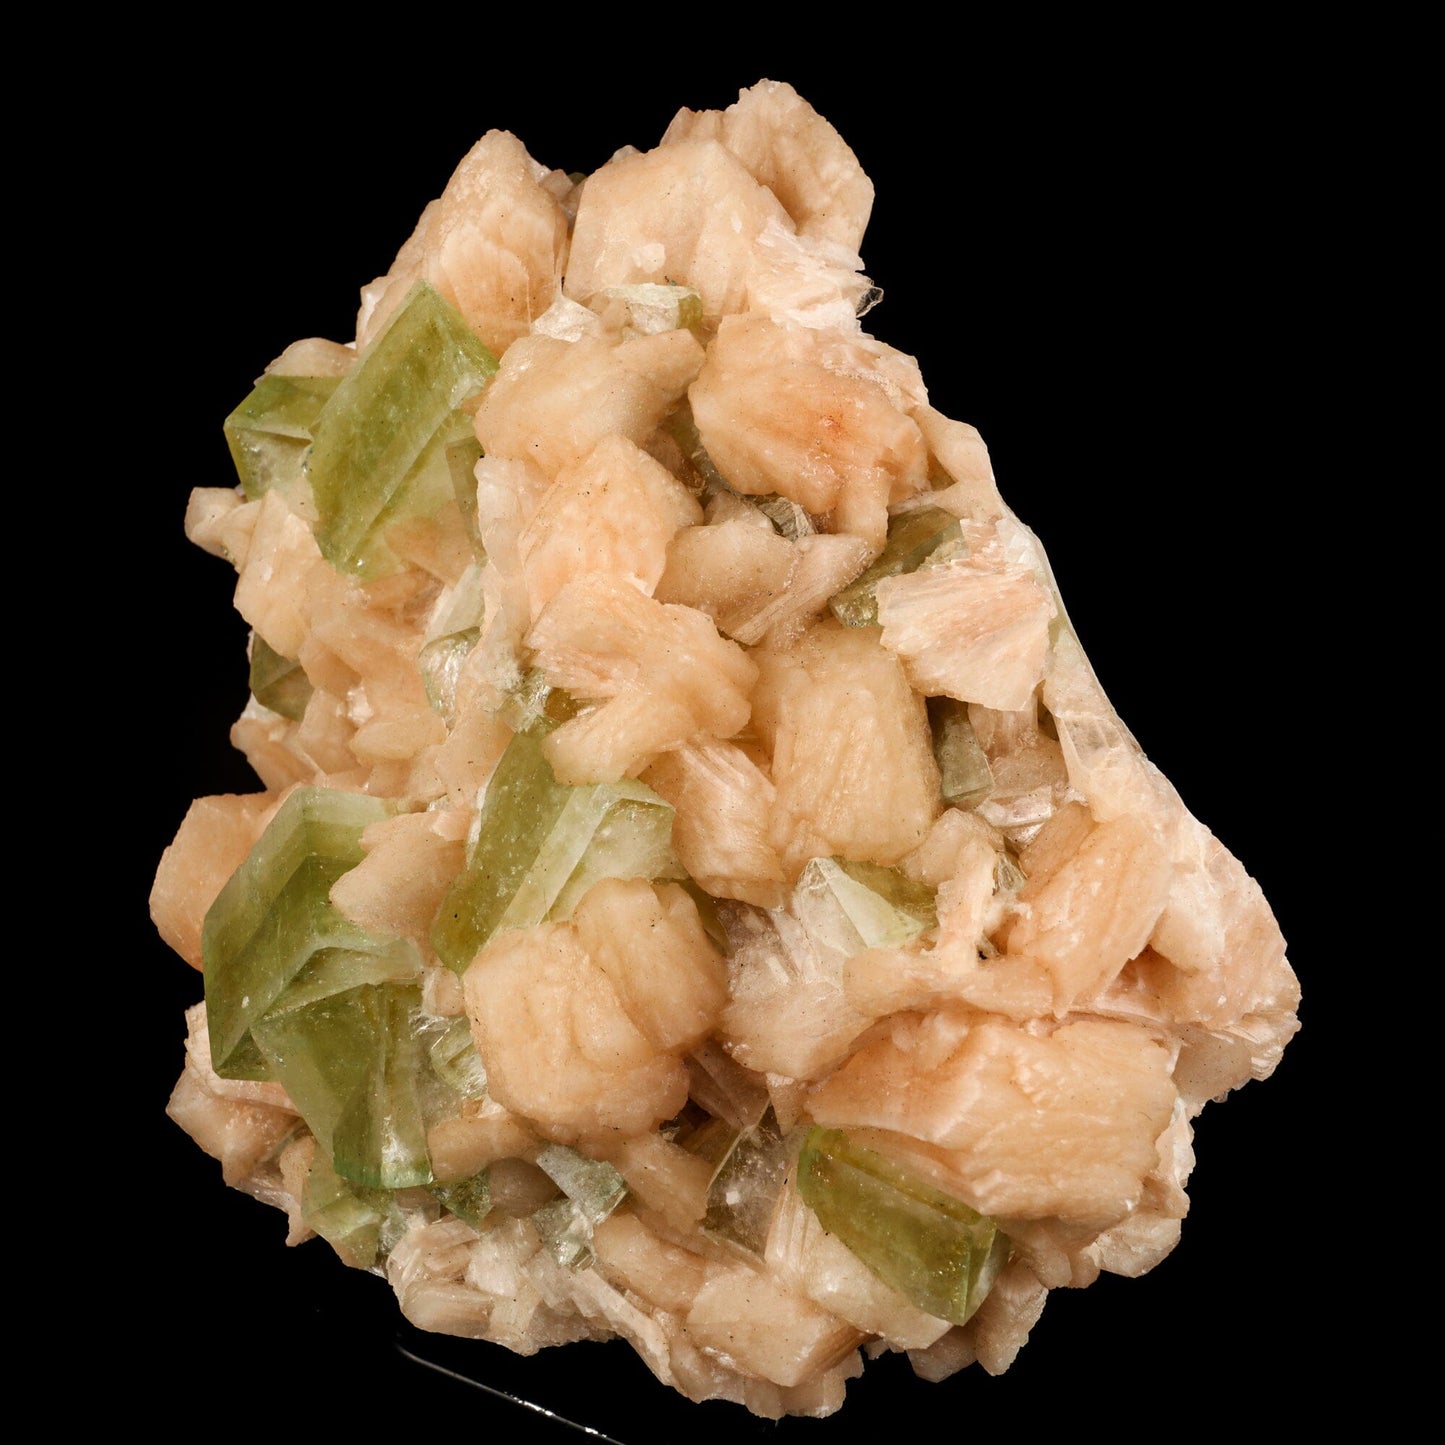 Apophyllite green cube with Stilbite Natural Mineral Specimen # B 6518 Apophyllite Superb Minerals 